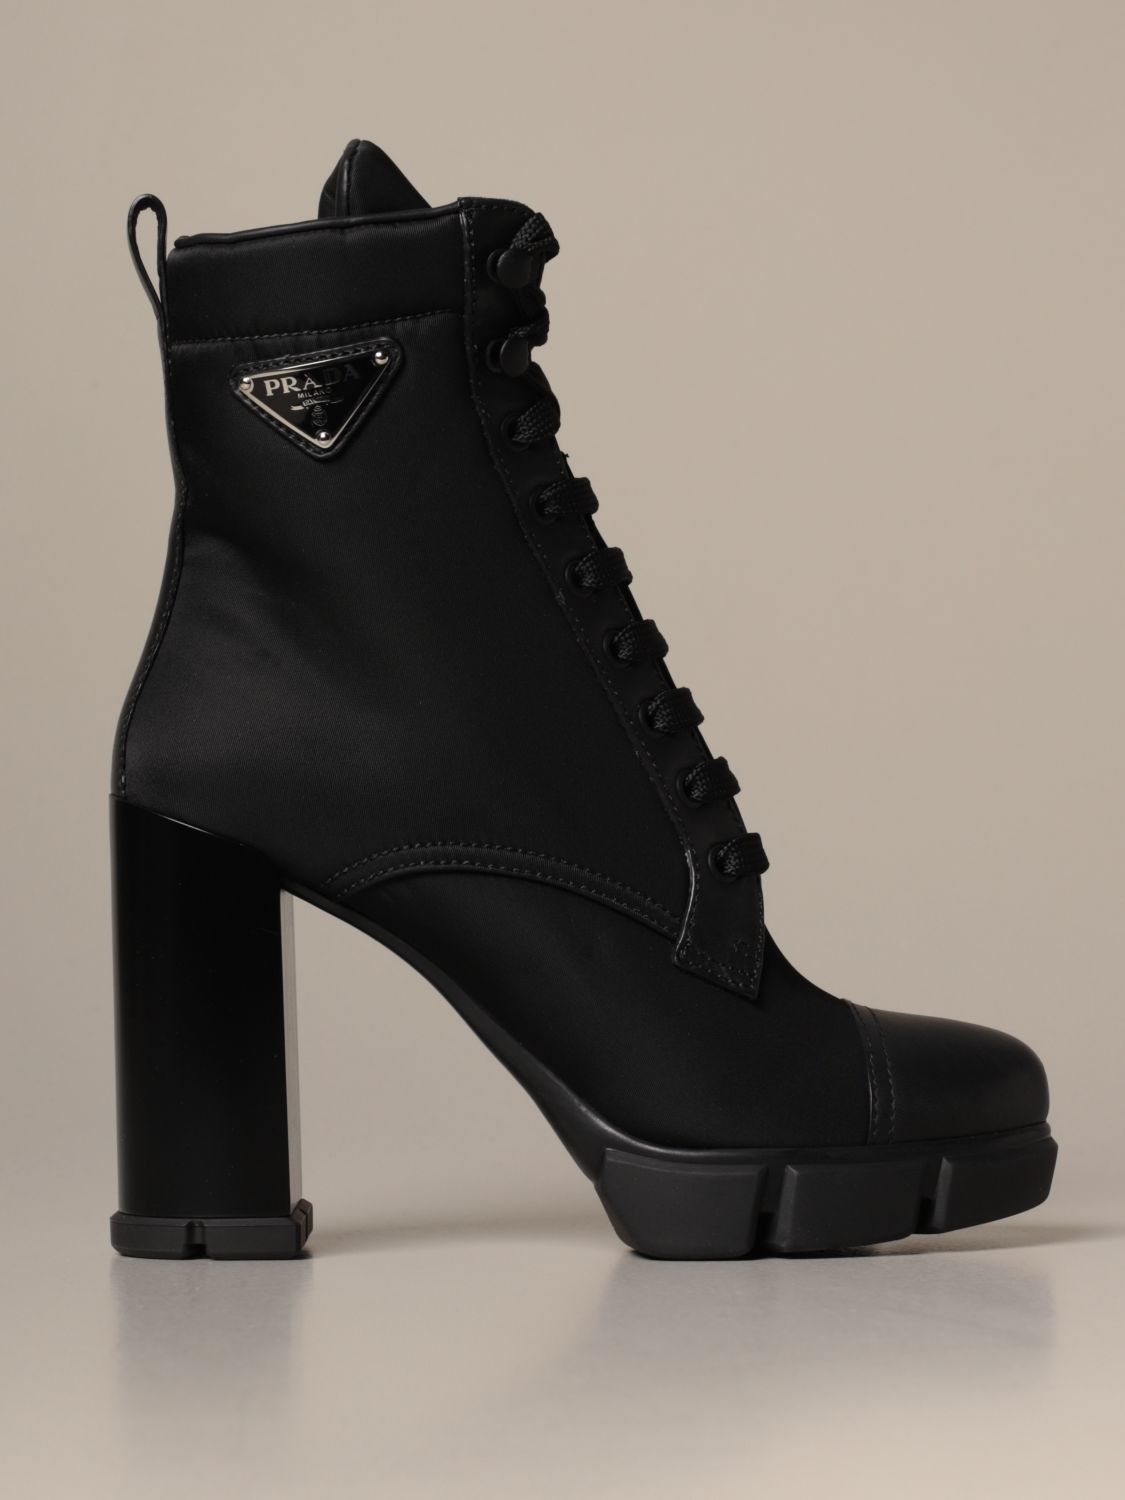 prada heeled boots